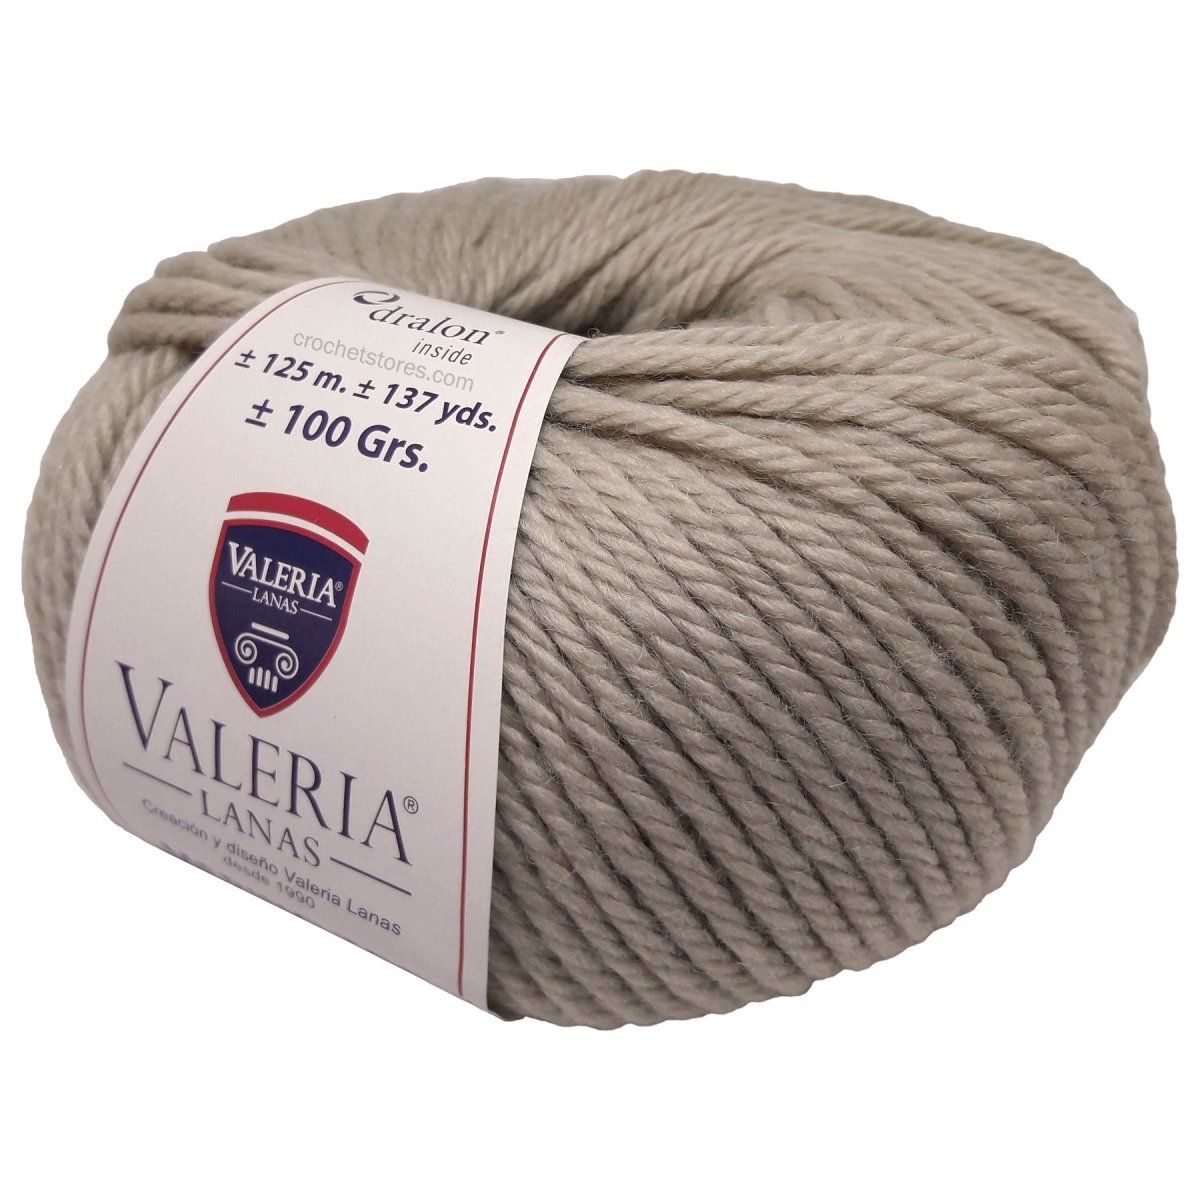 MERINO TOP - Crochetstores1008-0058435411405762